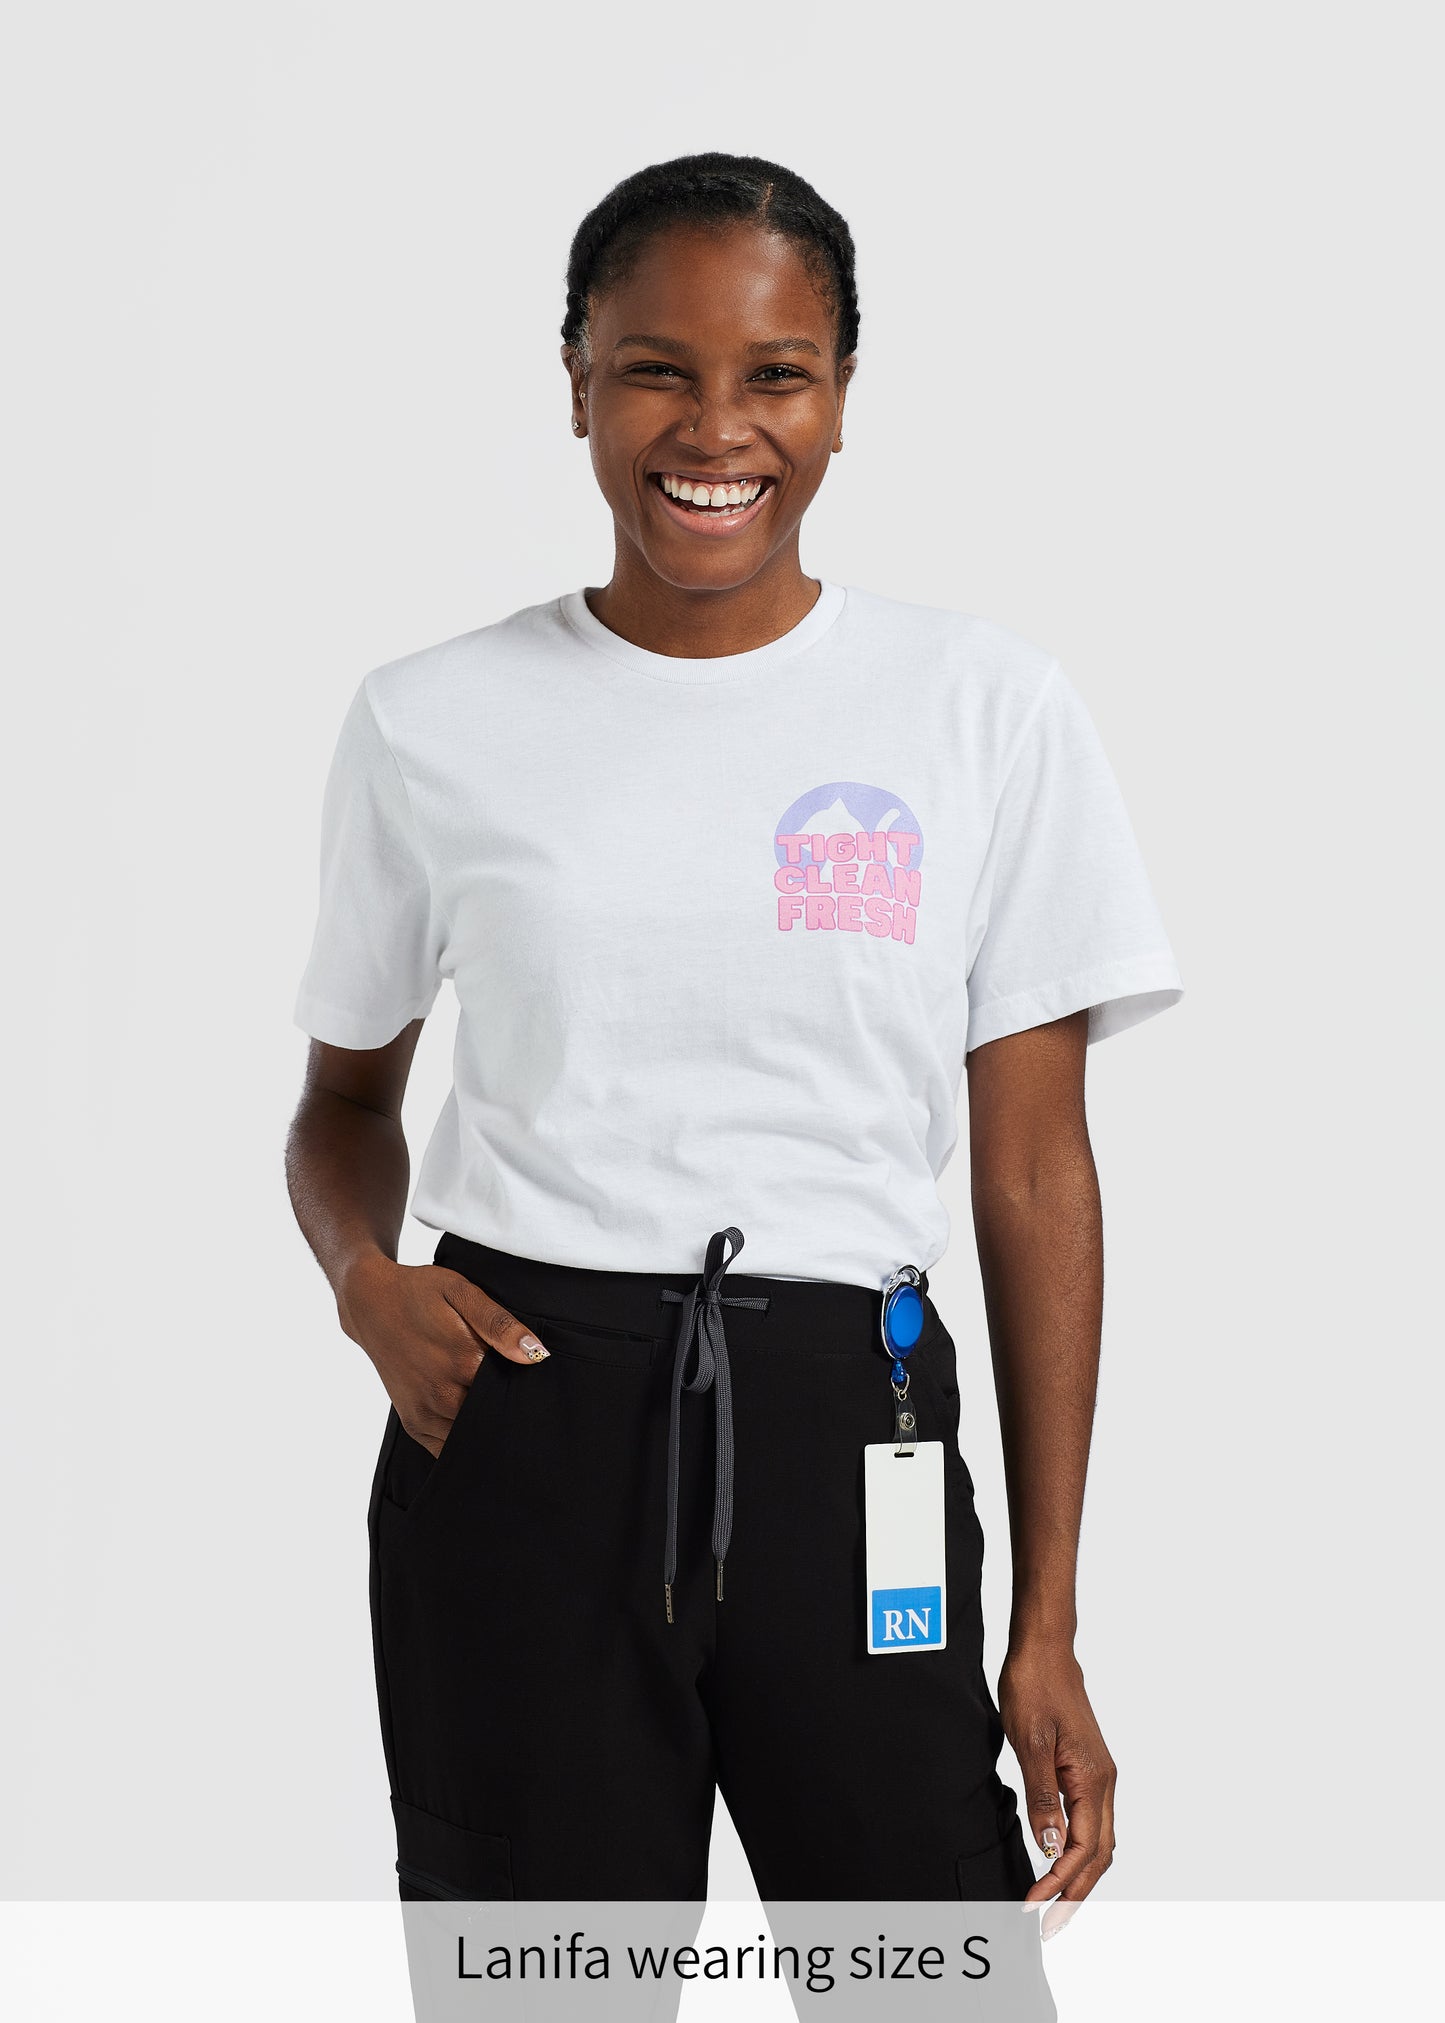 La camiseta de estilo suave de la enfermera Pamela